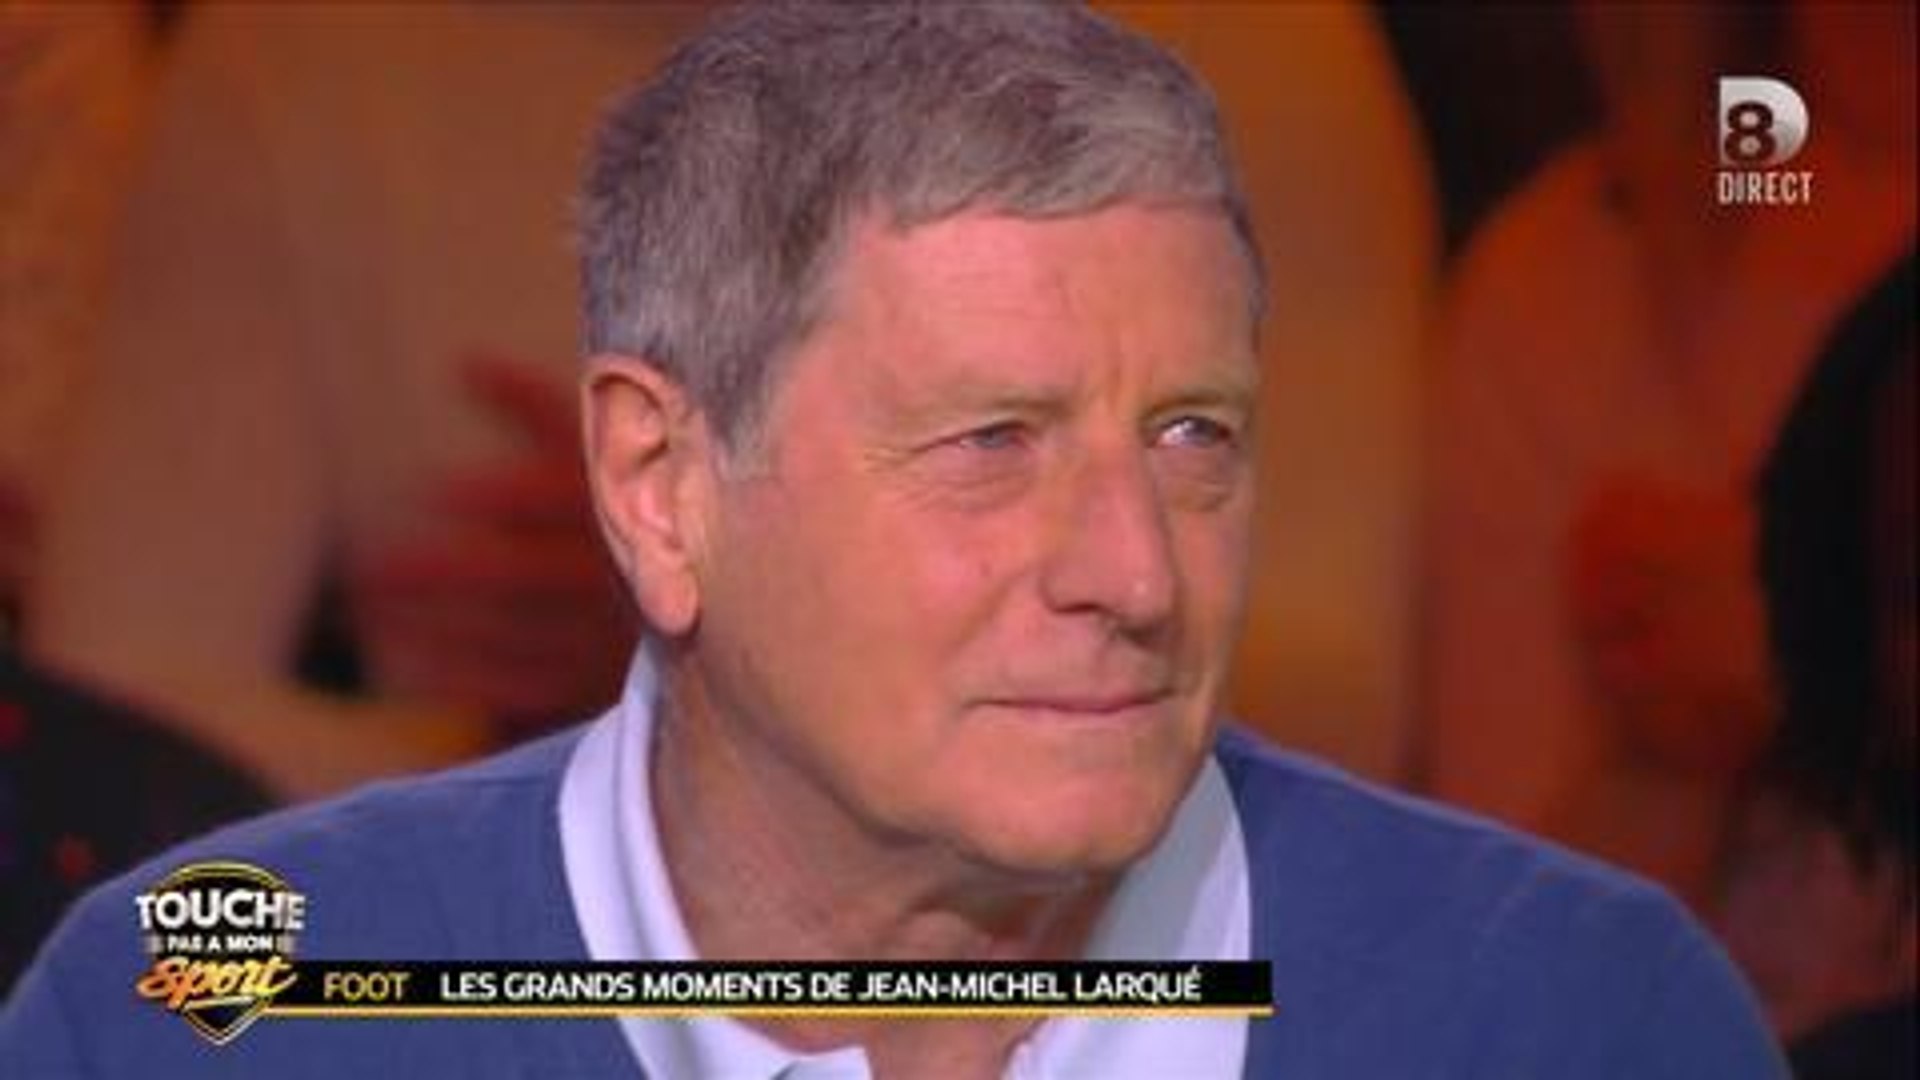 TPMS : Jean-Michel Larqué en larmes en évoquant la finale 98 - Vidéo  Dailymotion